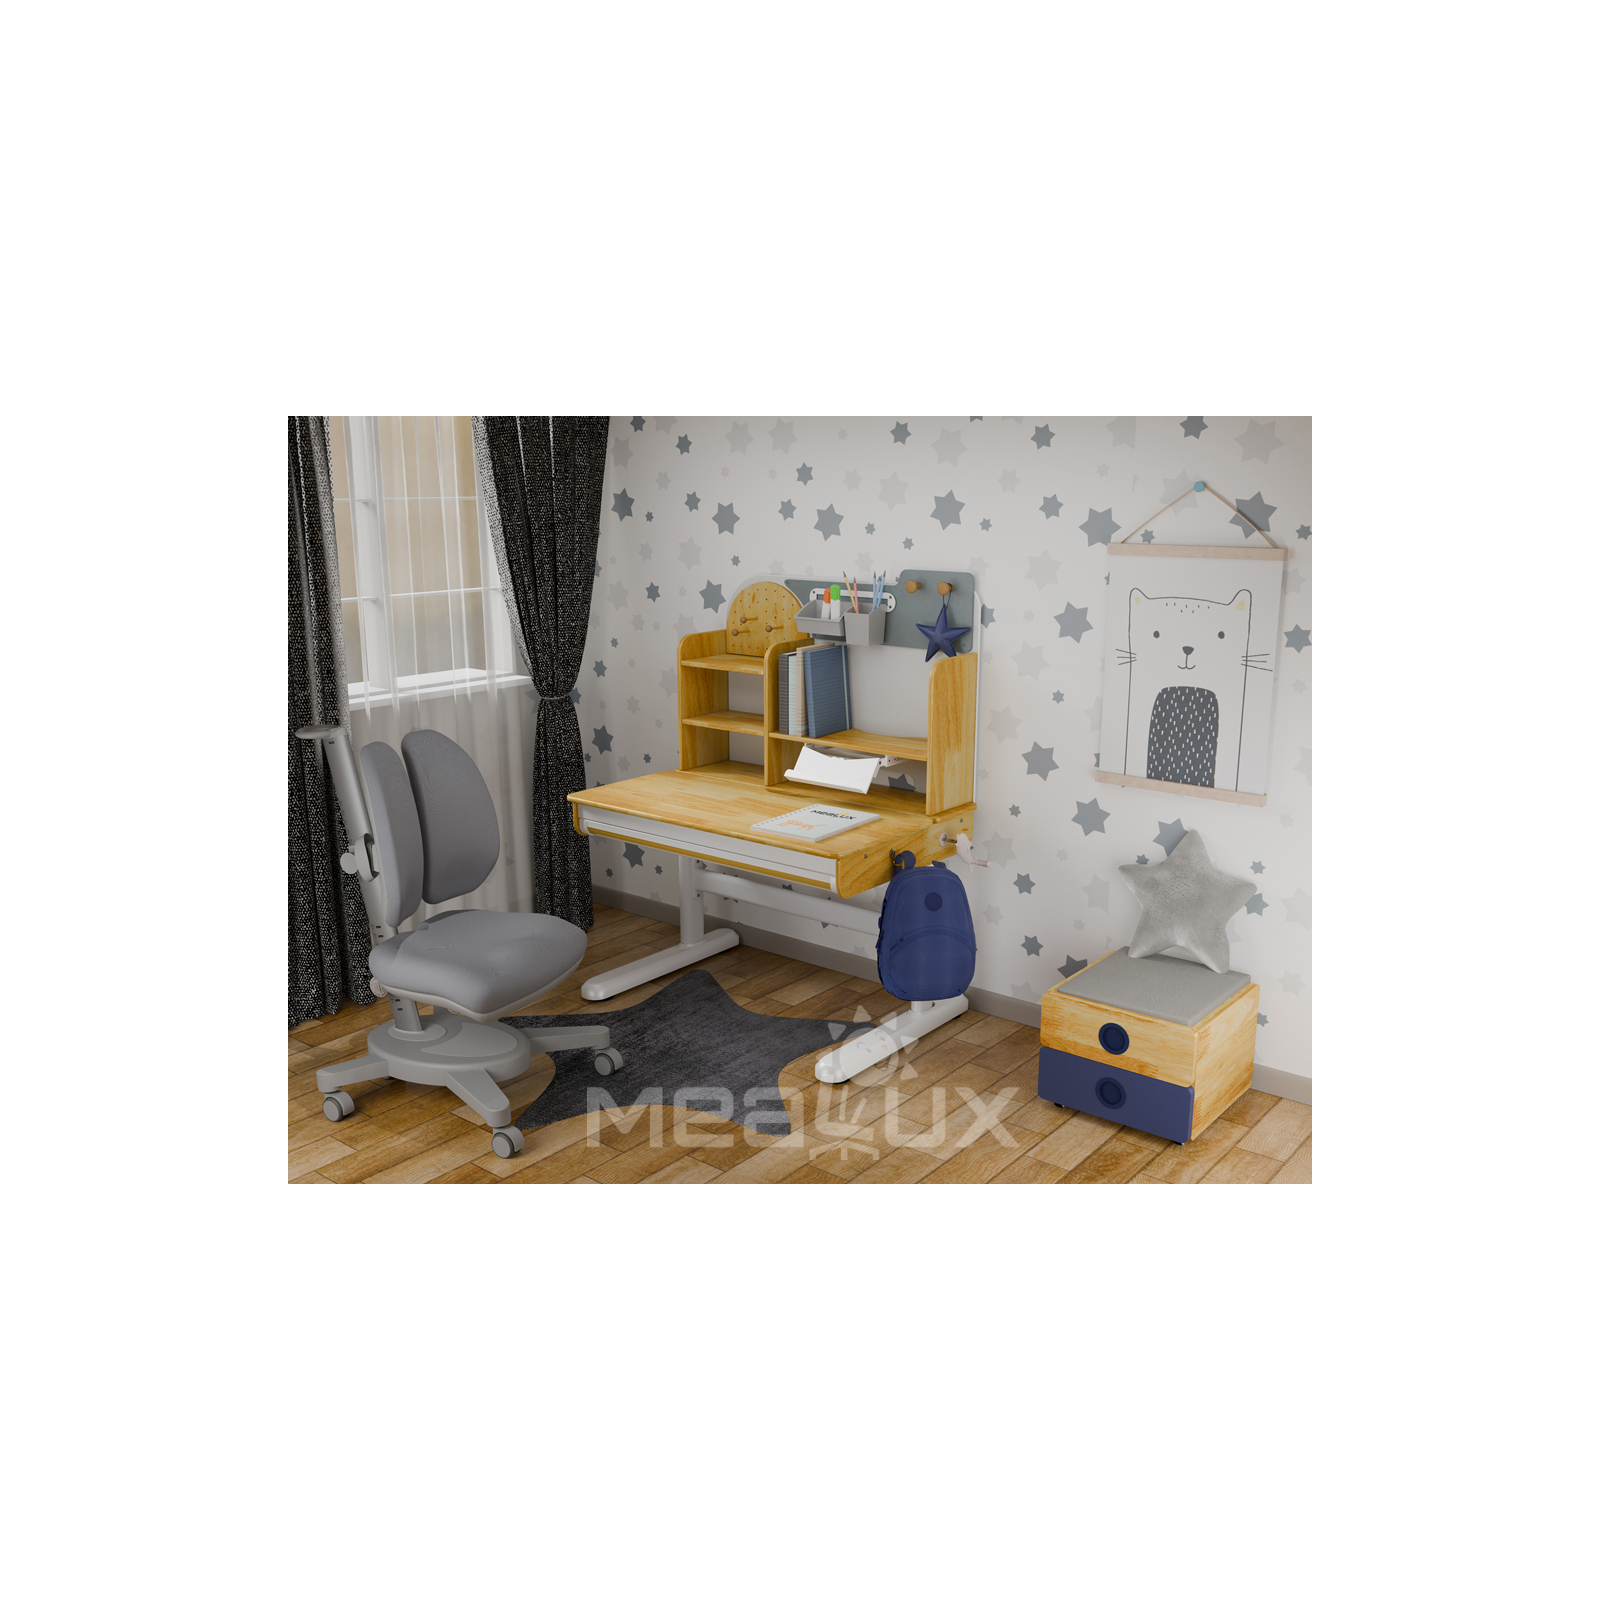 Парта с креслом Mealux Timberdesk S (парта+кресло+тумба) (BD-685 S+ box BD 920-2 BL+Y-115 G) изображение 2